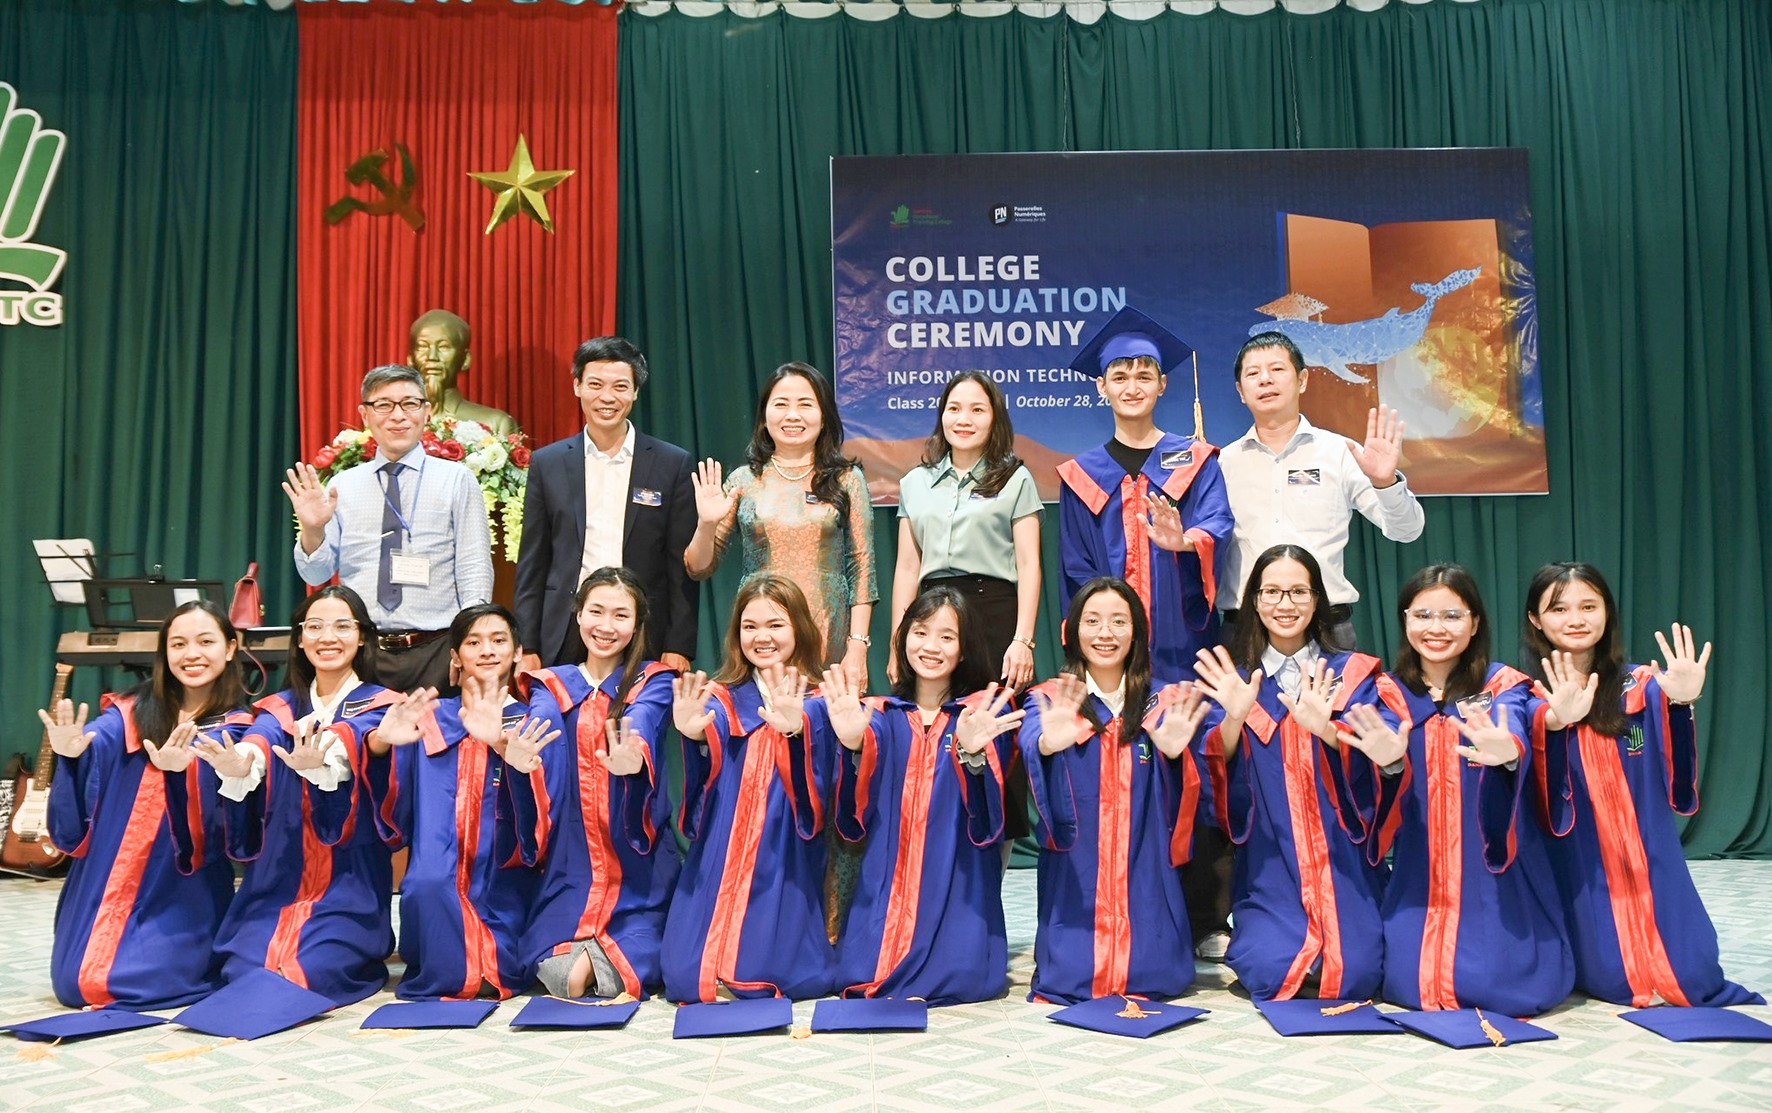 11 sinh viên người Quảng Trị từng được nhận học bổng “Cao đẳng Công nghệ thông tin” từ Tổ chức Passerelles Numériques Viet Nam đã tốt nghiệp và có việc làm ổn định với thu nhập cao - Ảnh: Hội Khuyến học tỉnh cung cấp